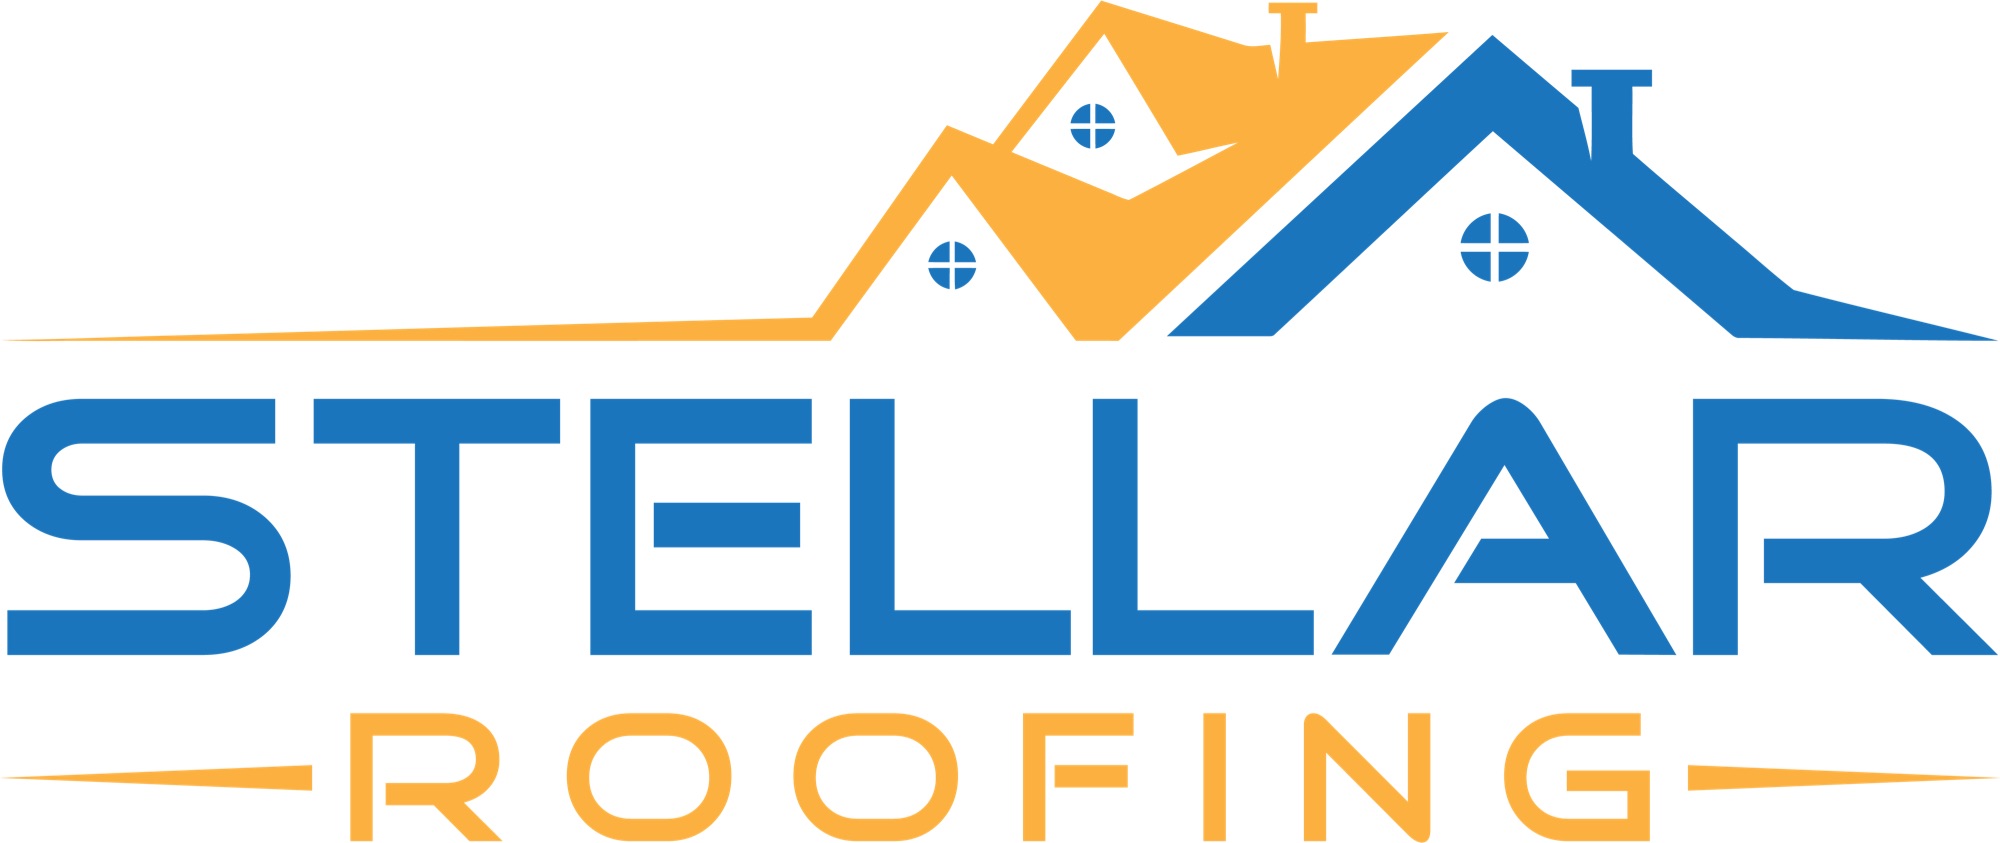 Stellar Roofing Services Logo